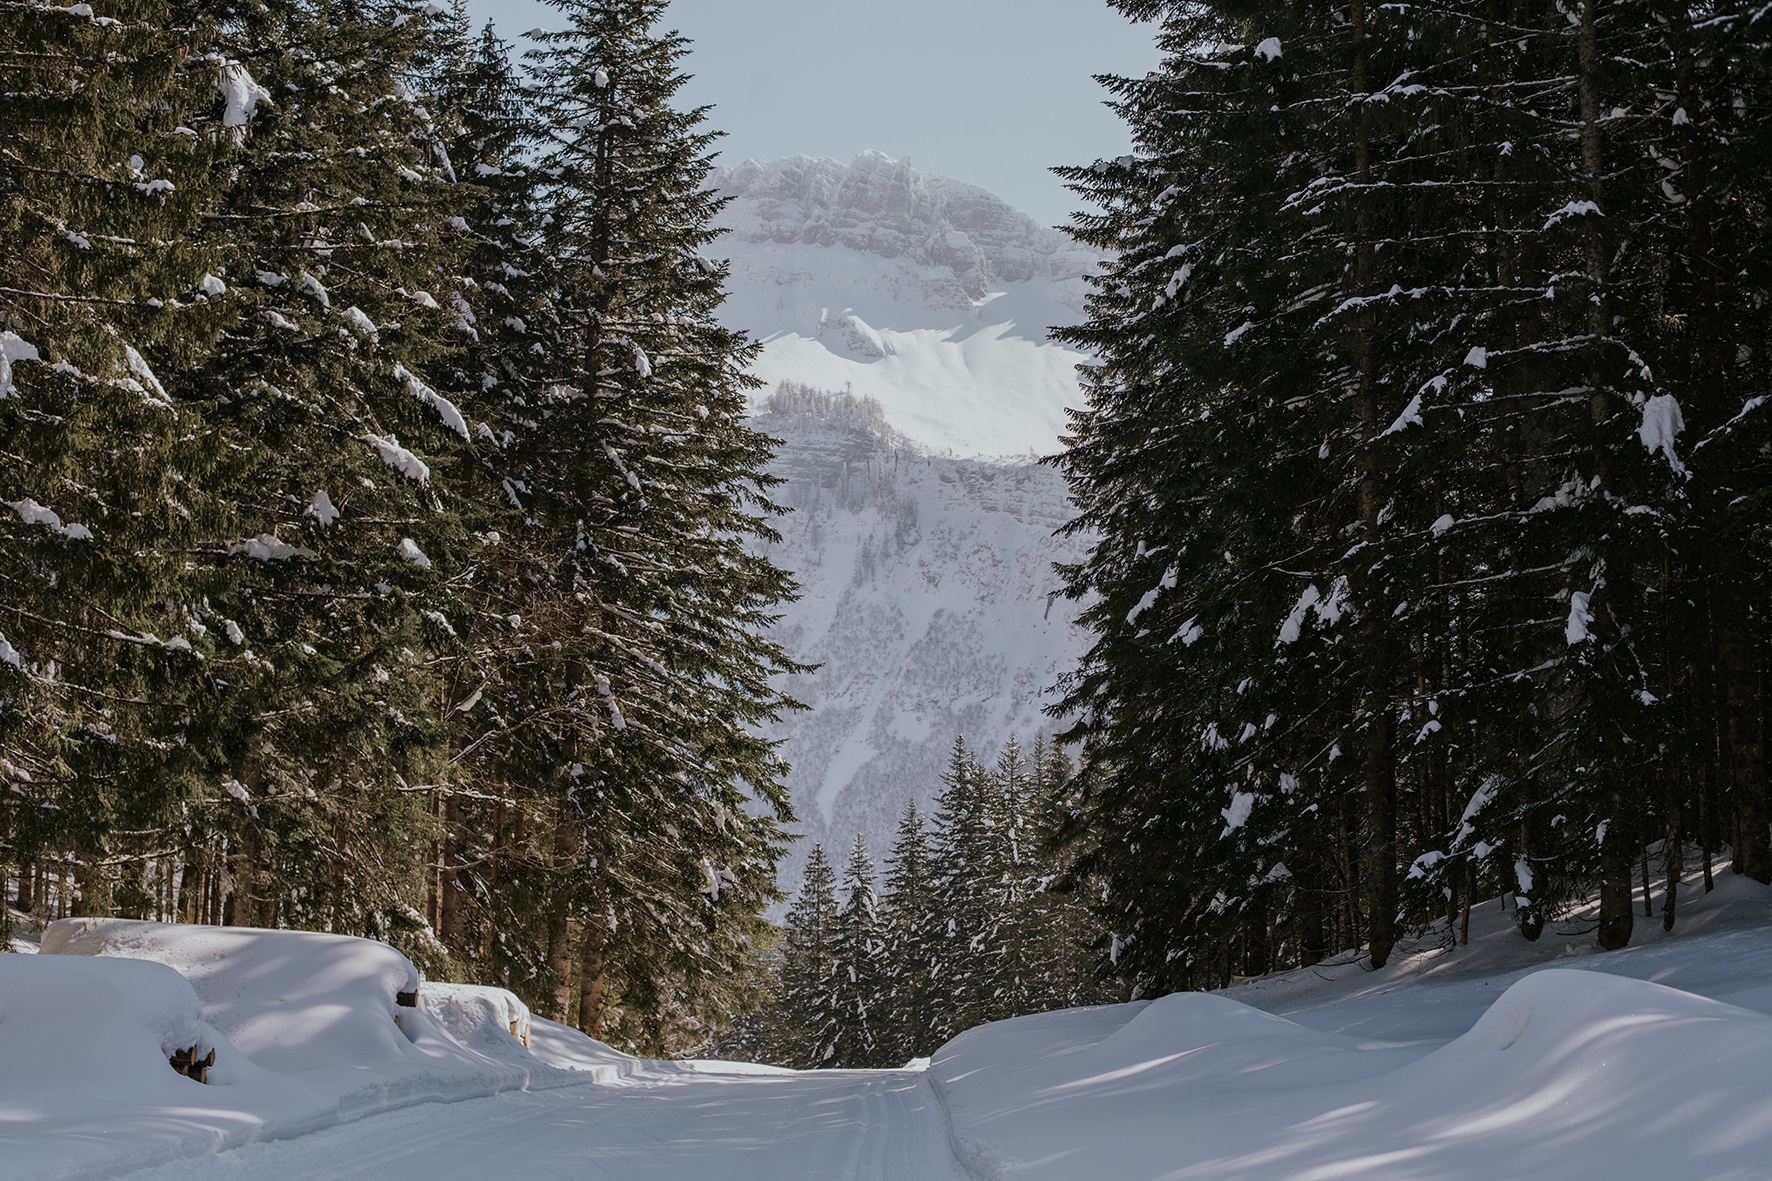 Langlaufloipe im Wald mit Blick auf die Berge